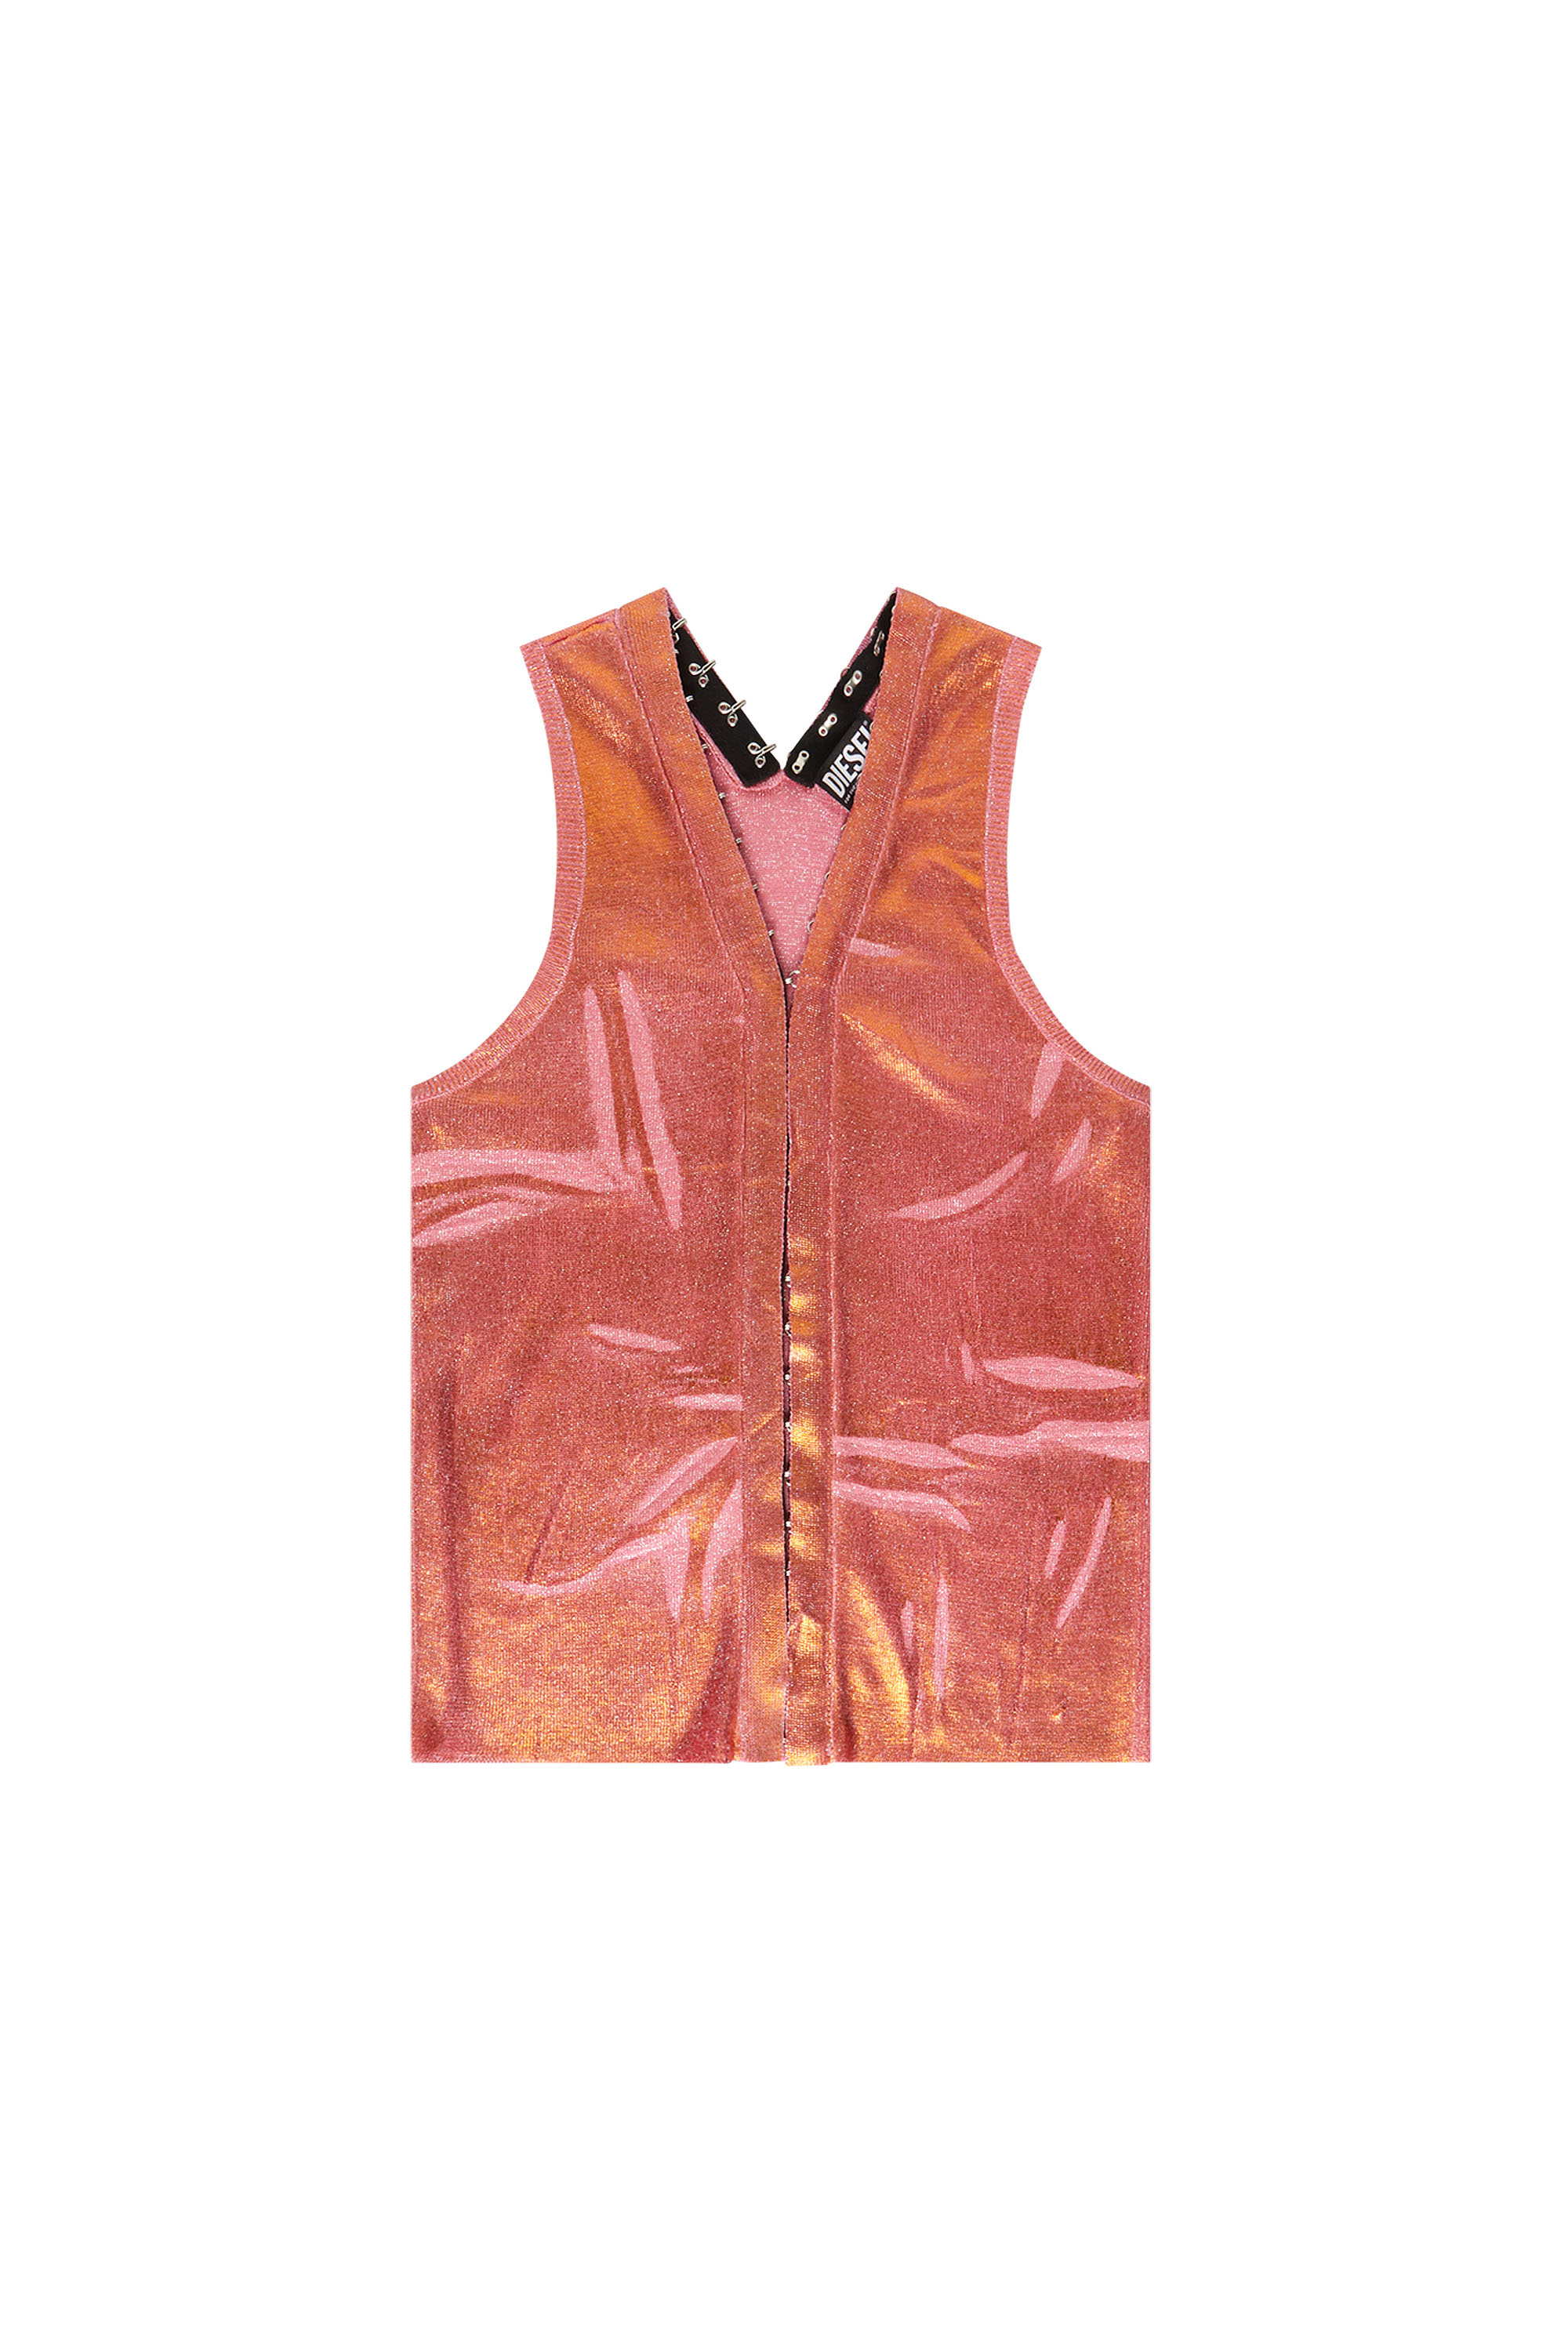 M-ARCELA, Pink/Orange - Knitwear